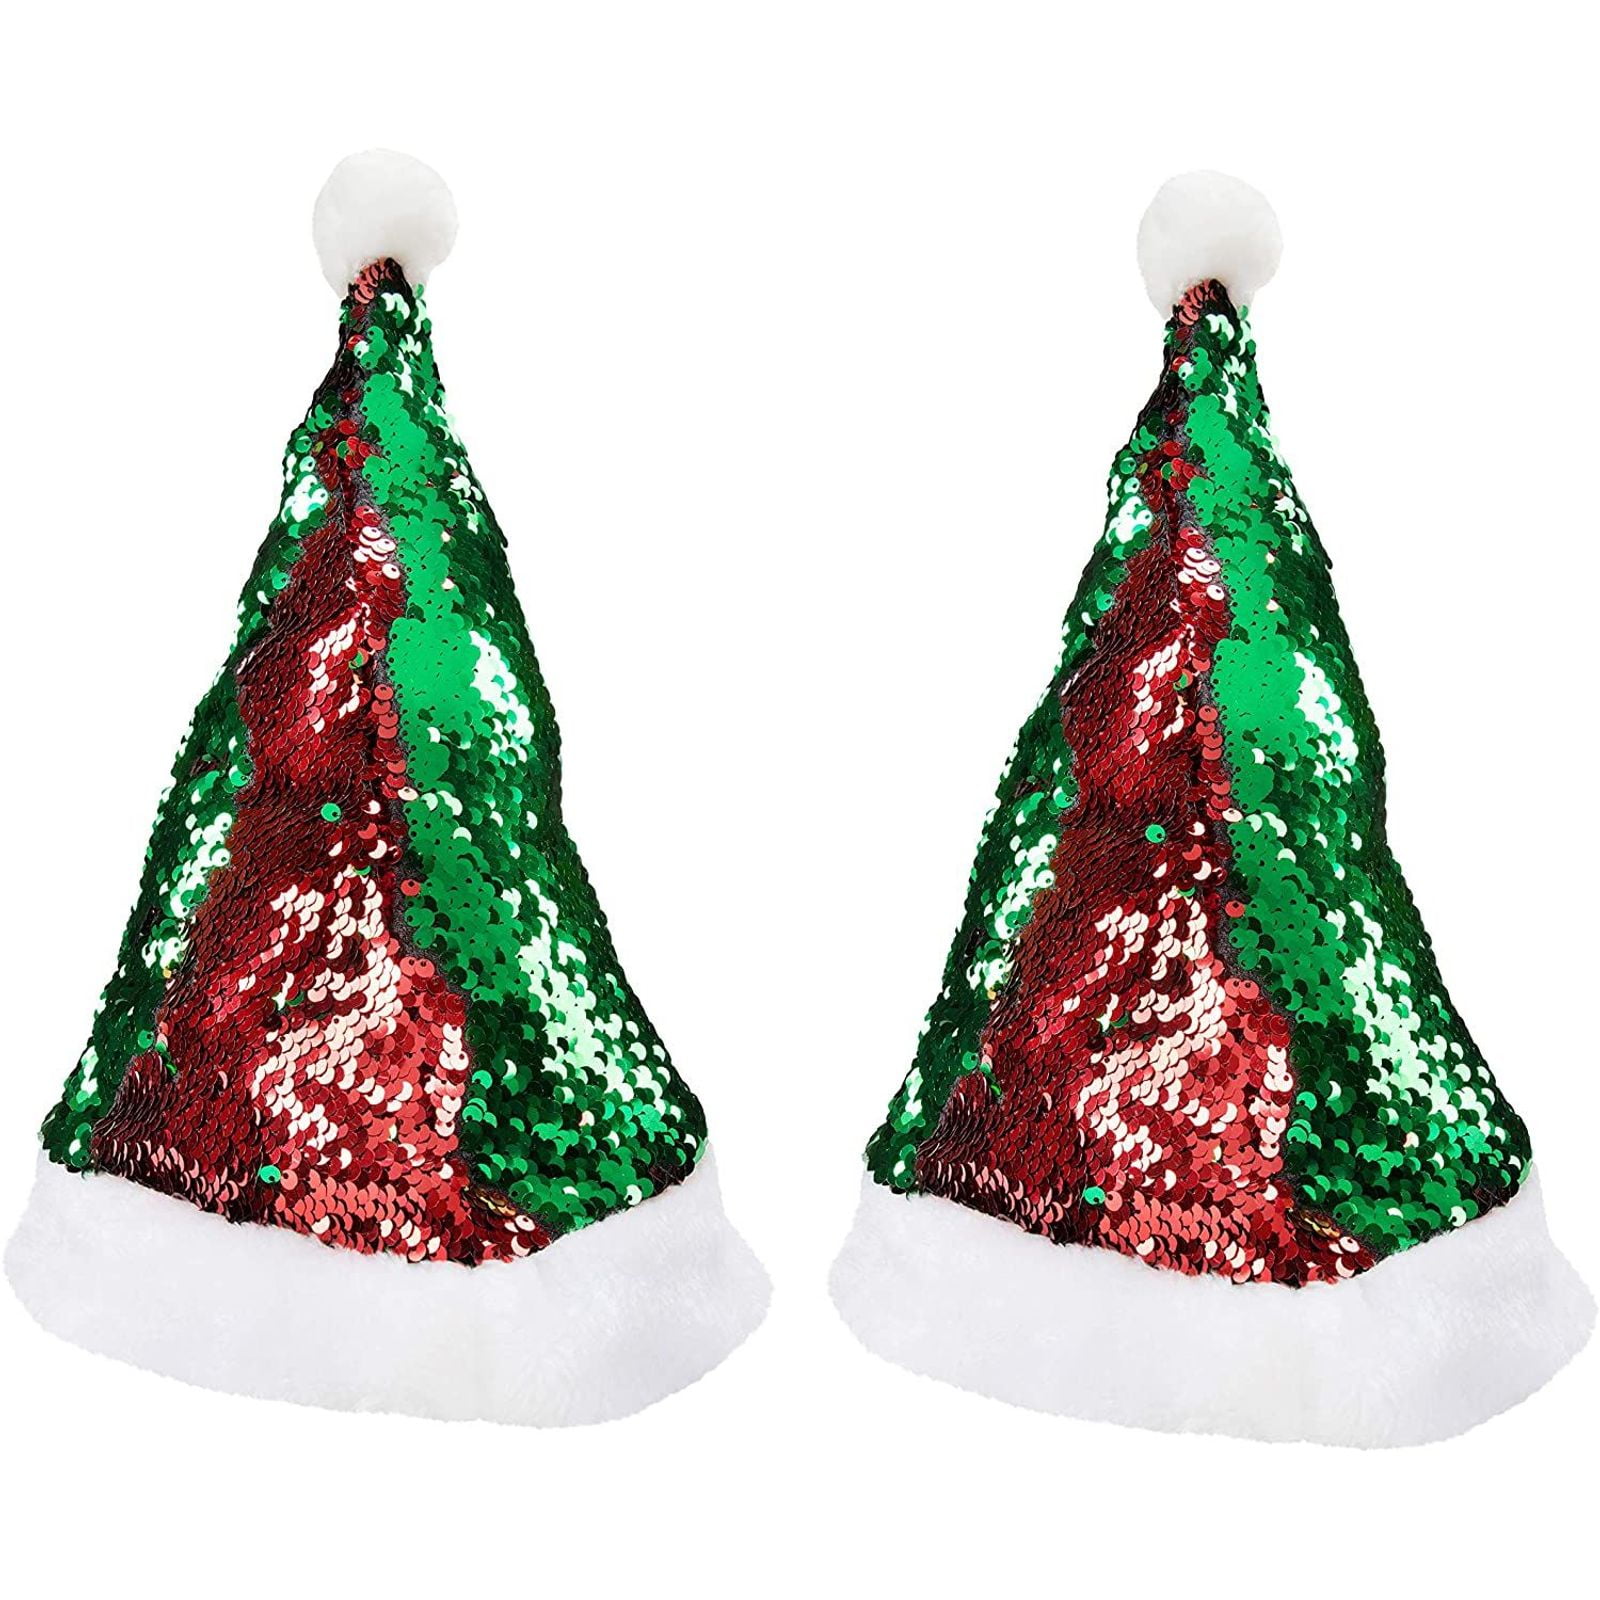 Adult Xmas Festive Fancy Beautiful Cap Christmas Reversible Sequin Santa Hat